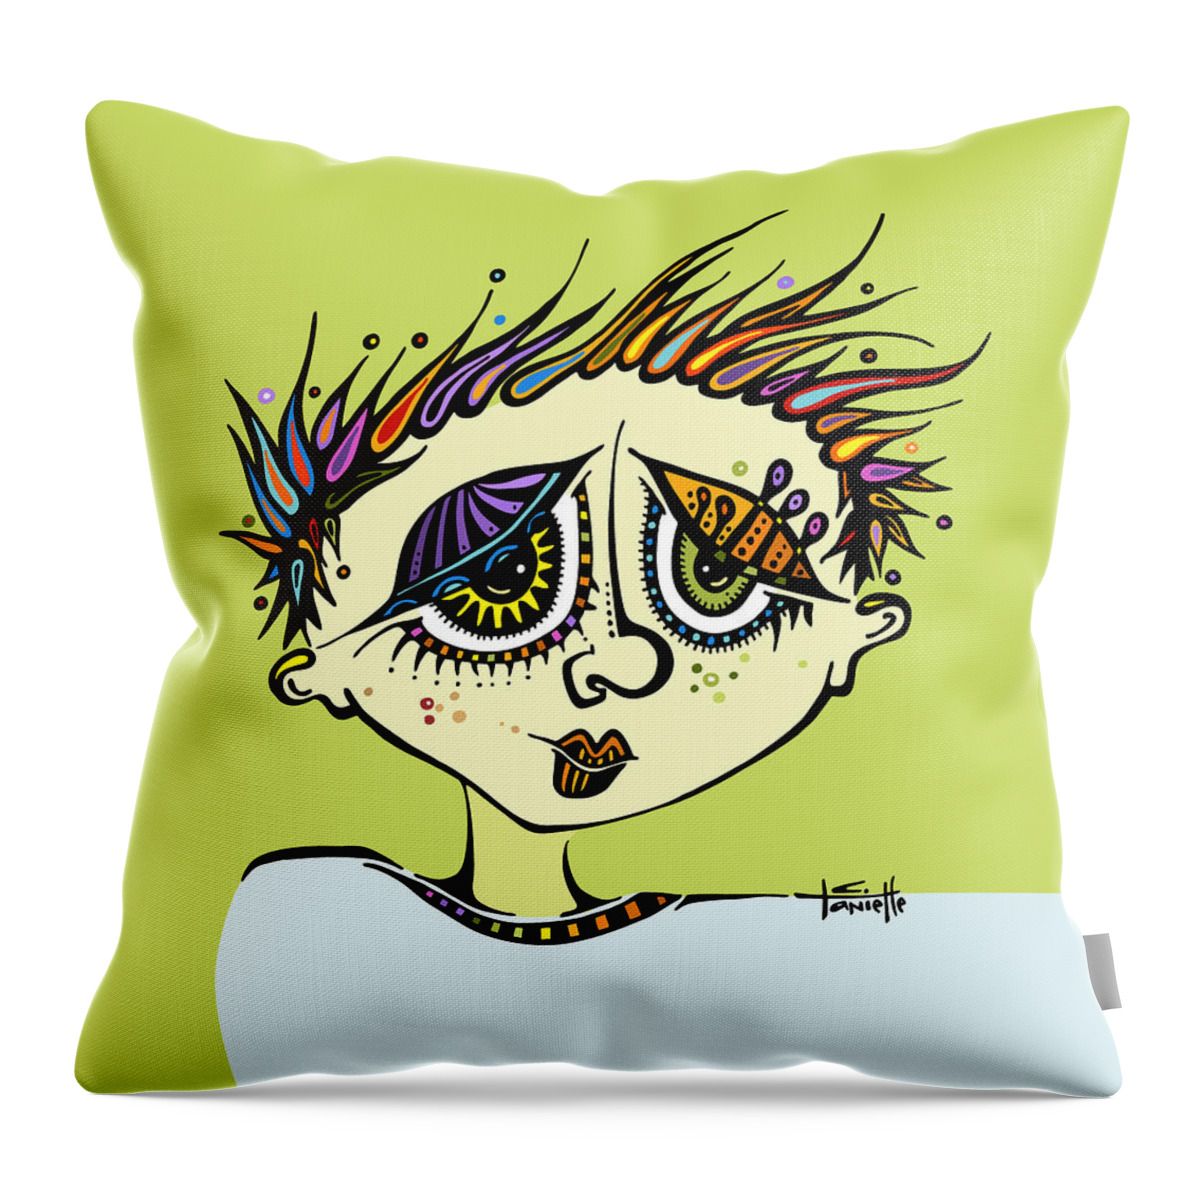 Little Einstein Throw Pillow featuring the digital art Little Einstein by Tanielle Childers